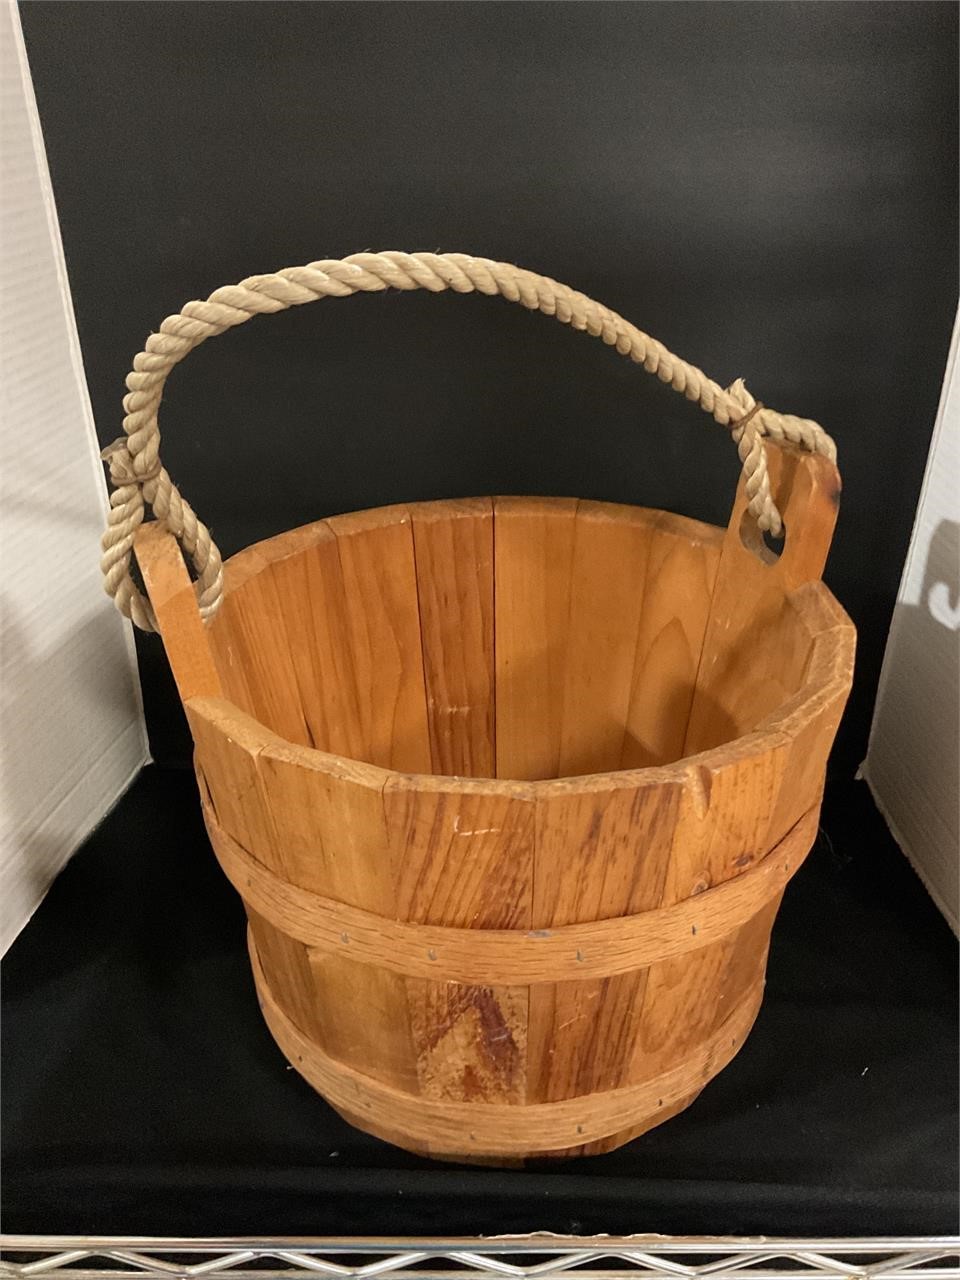 12” wood feed bucket